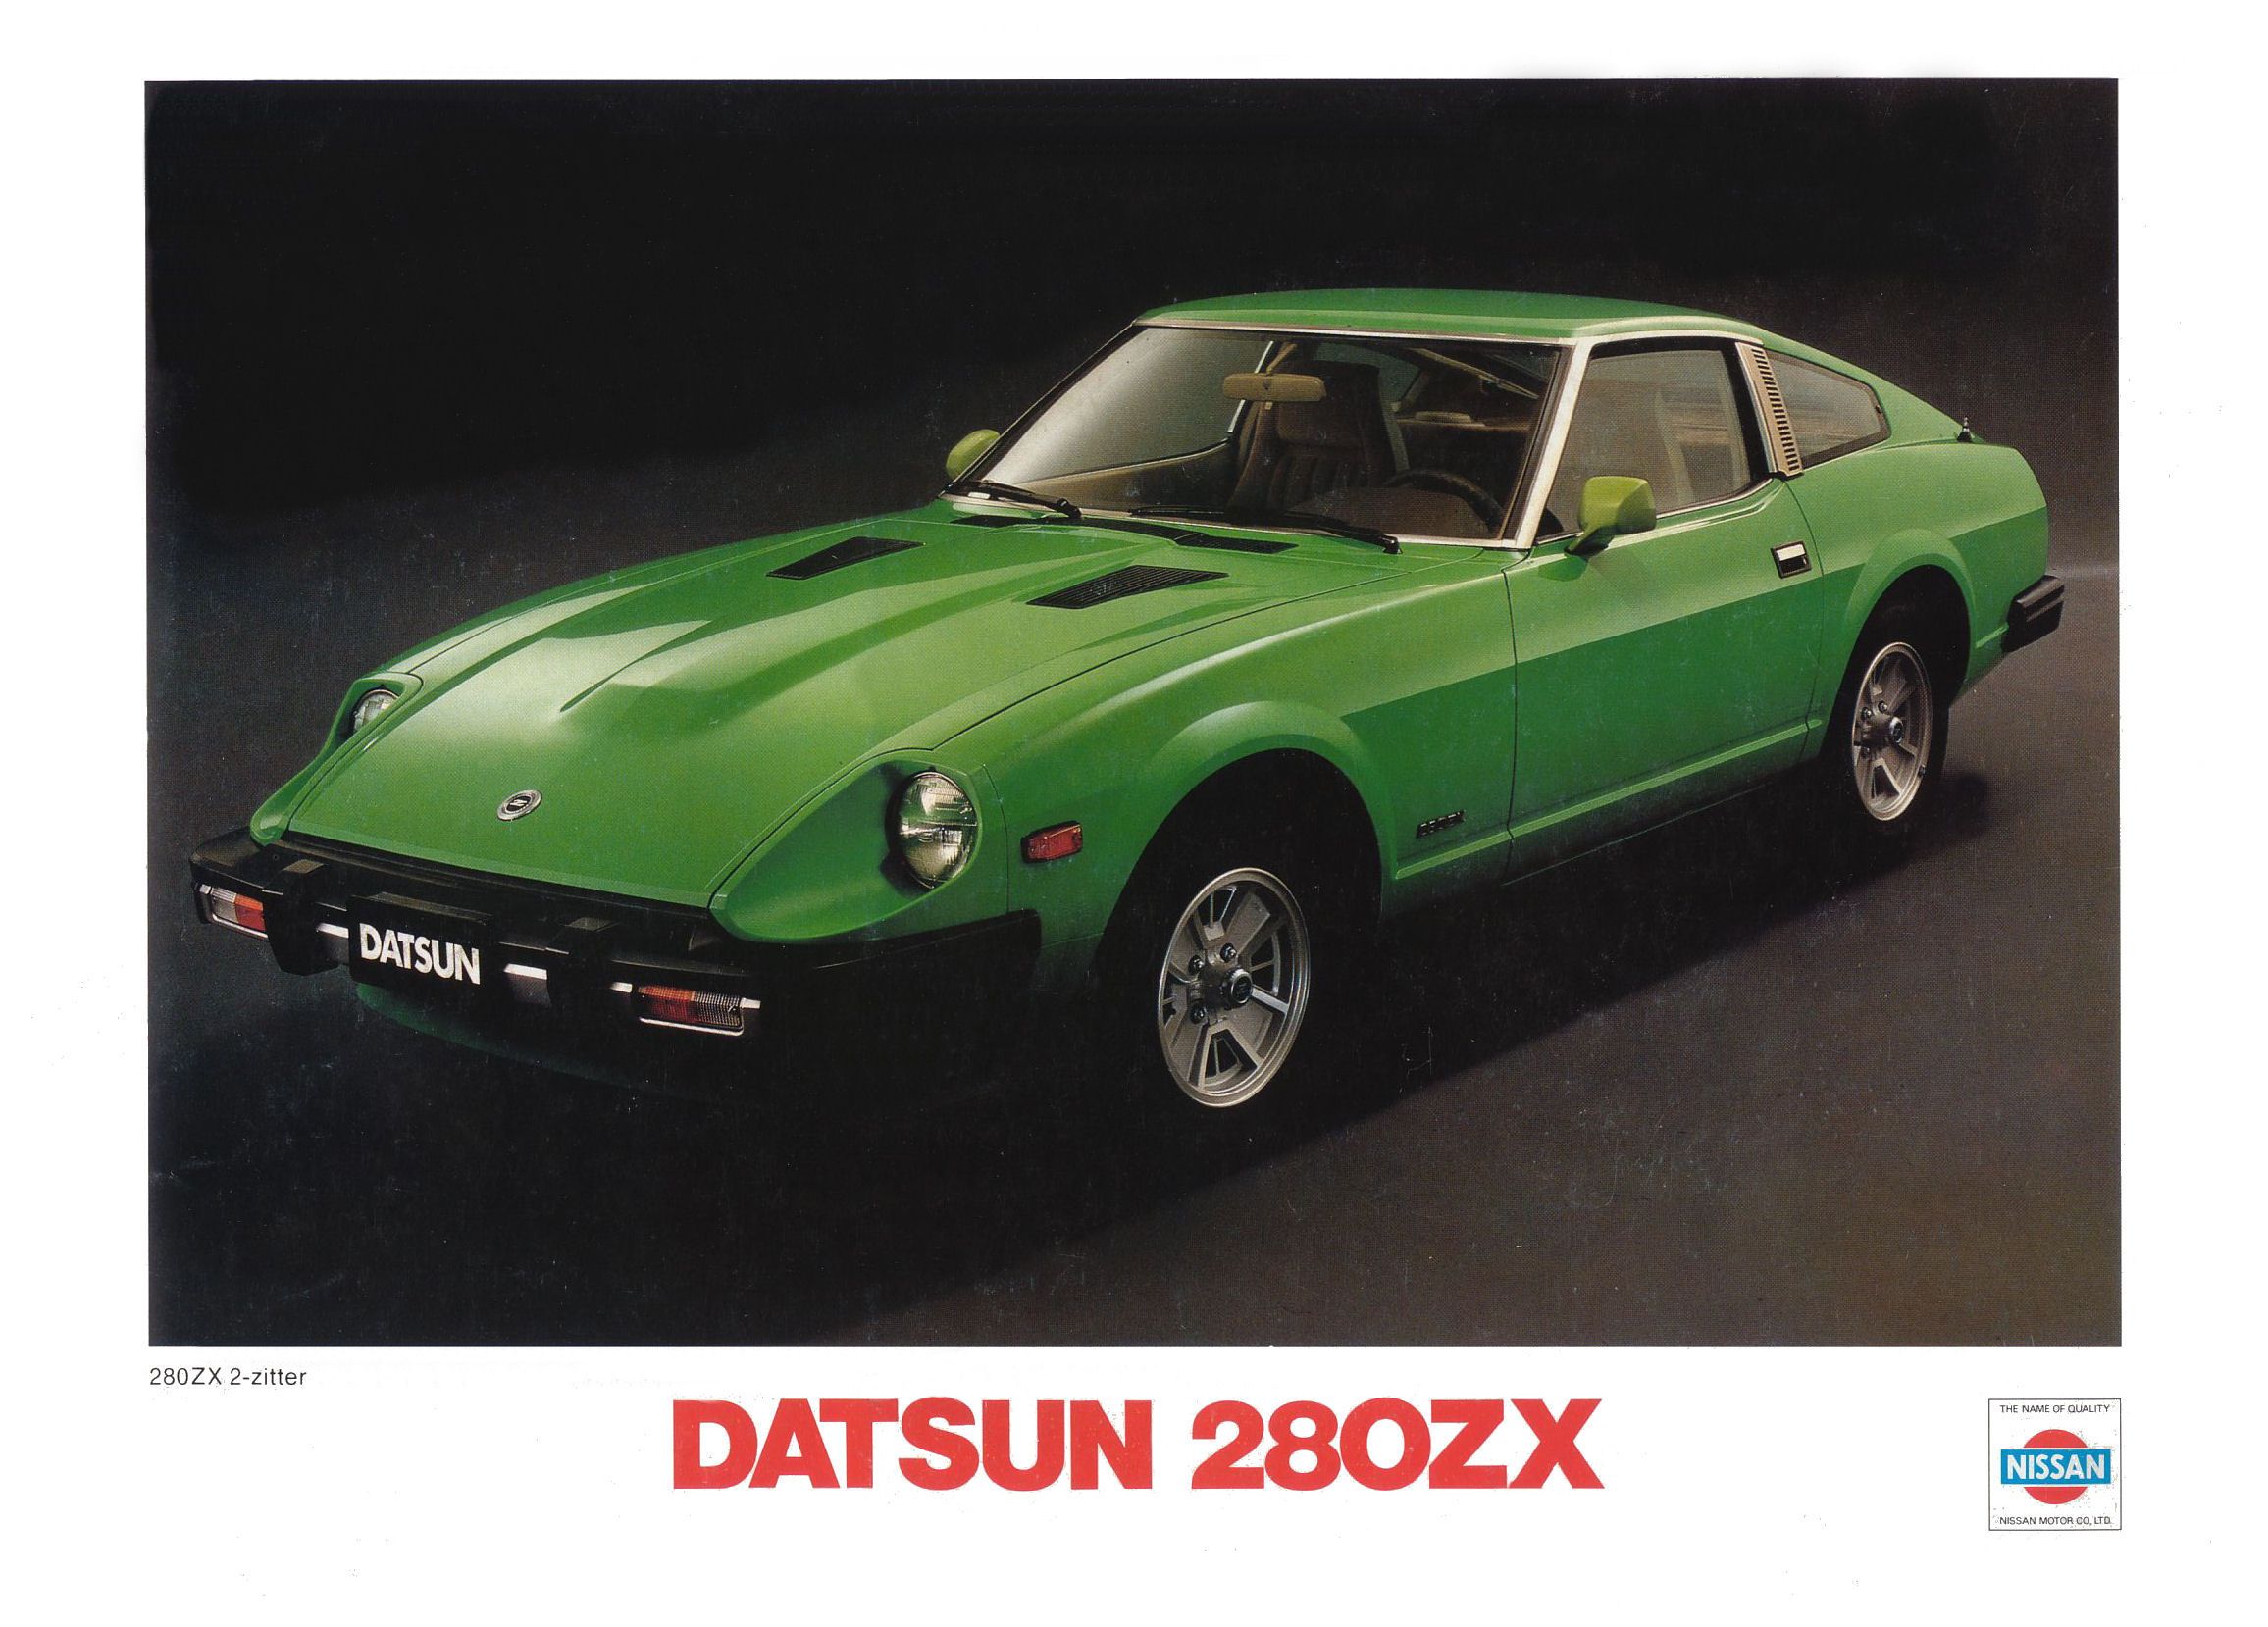 1979 Datsun 280 ZX brochure